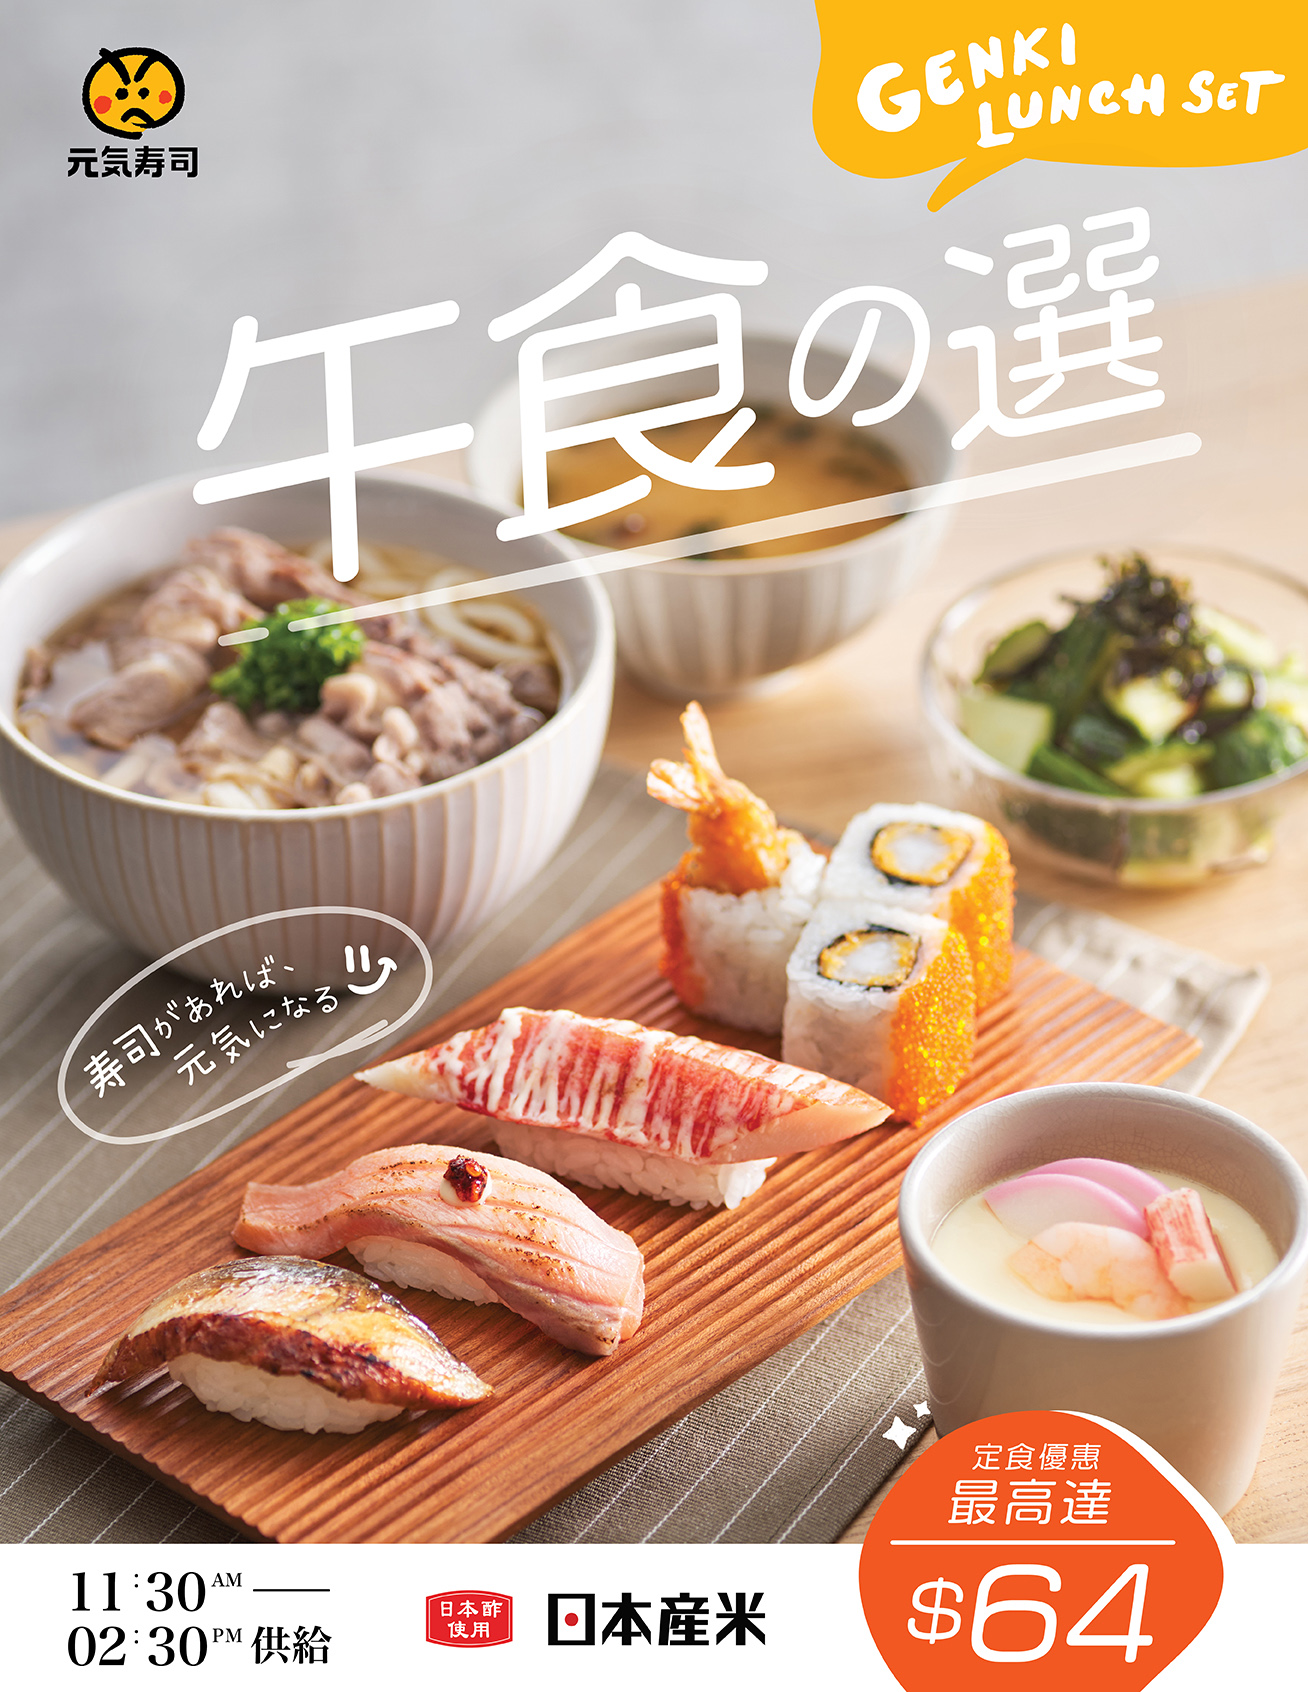 2304_Homepage_News_Genki_Lunch_Tea_online_ordering__1308Wx1692H__Lunch_C.jpg